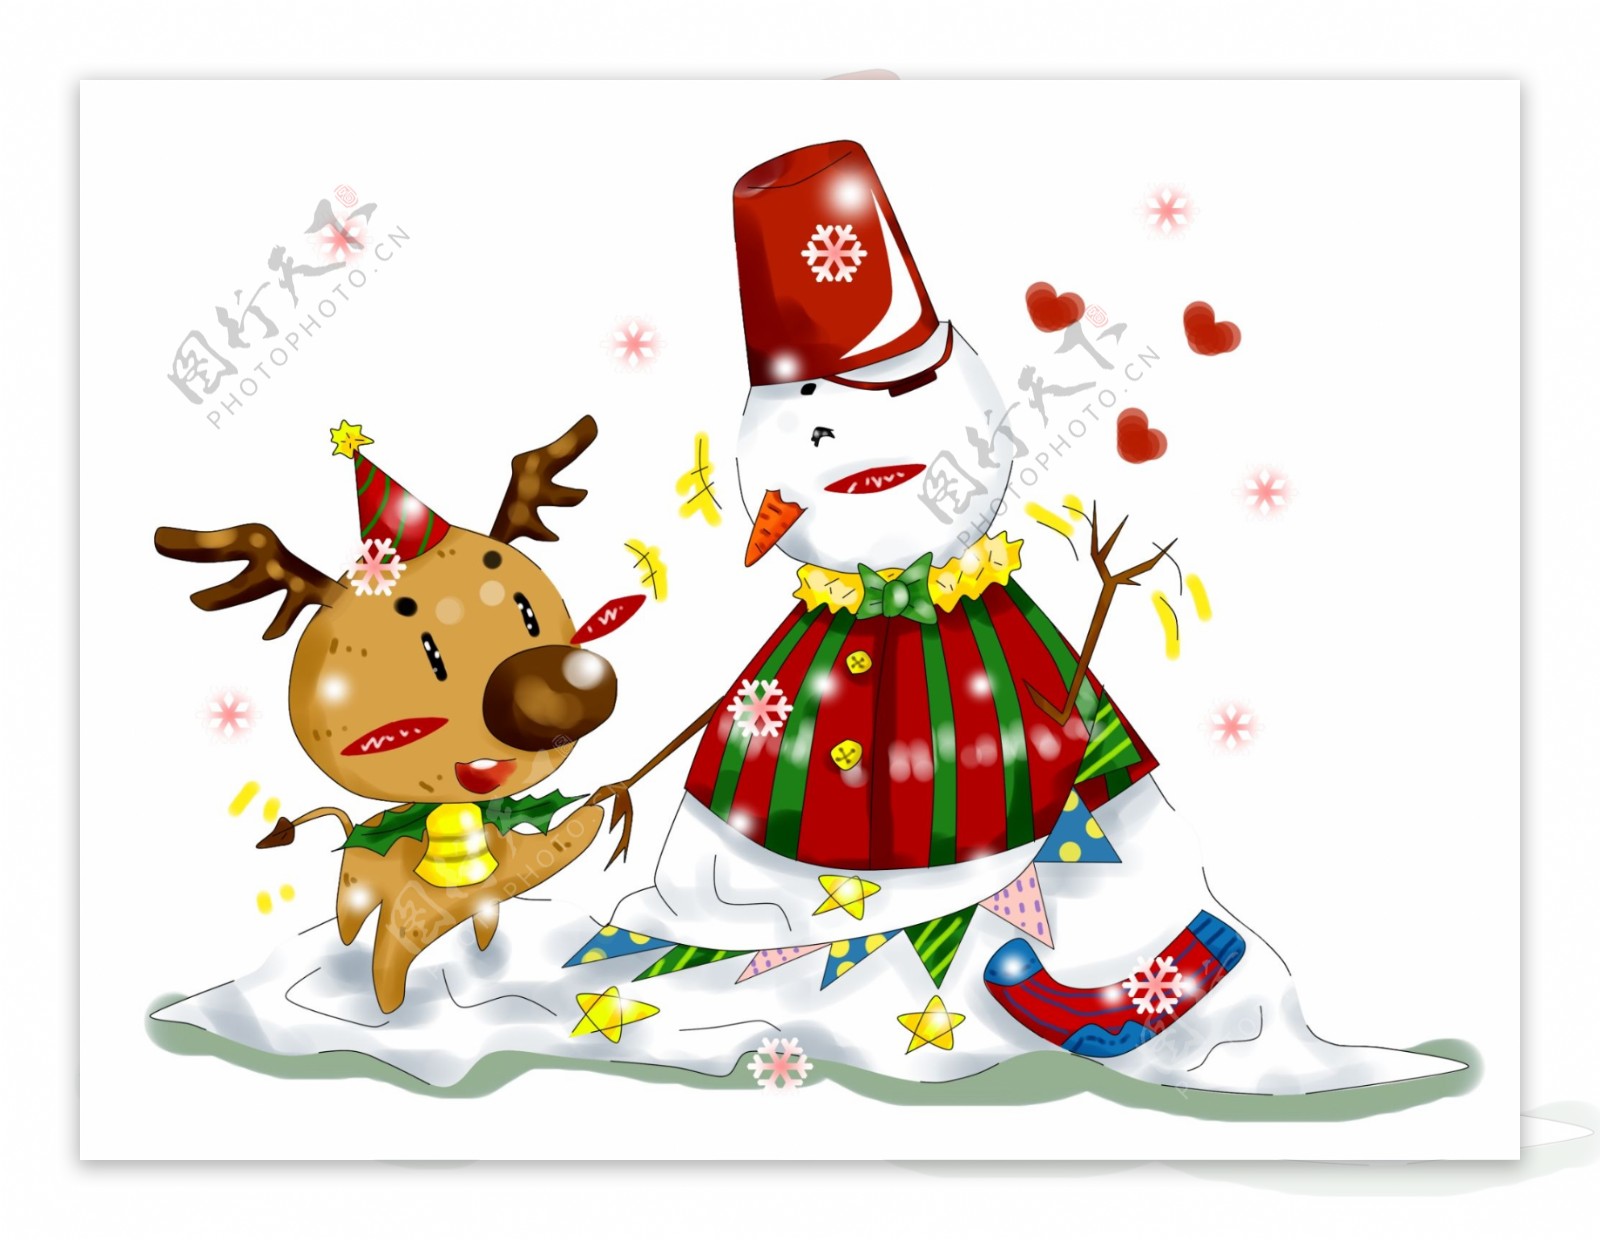 卡通手绘原创厚涂唯美圣诞节小鹿与雪人插画PNG